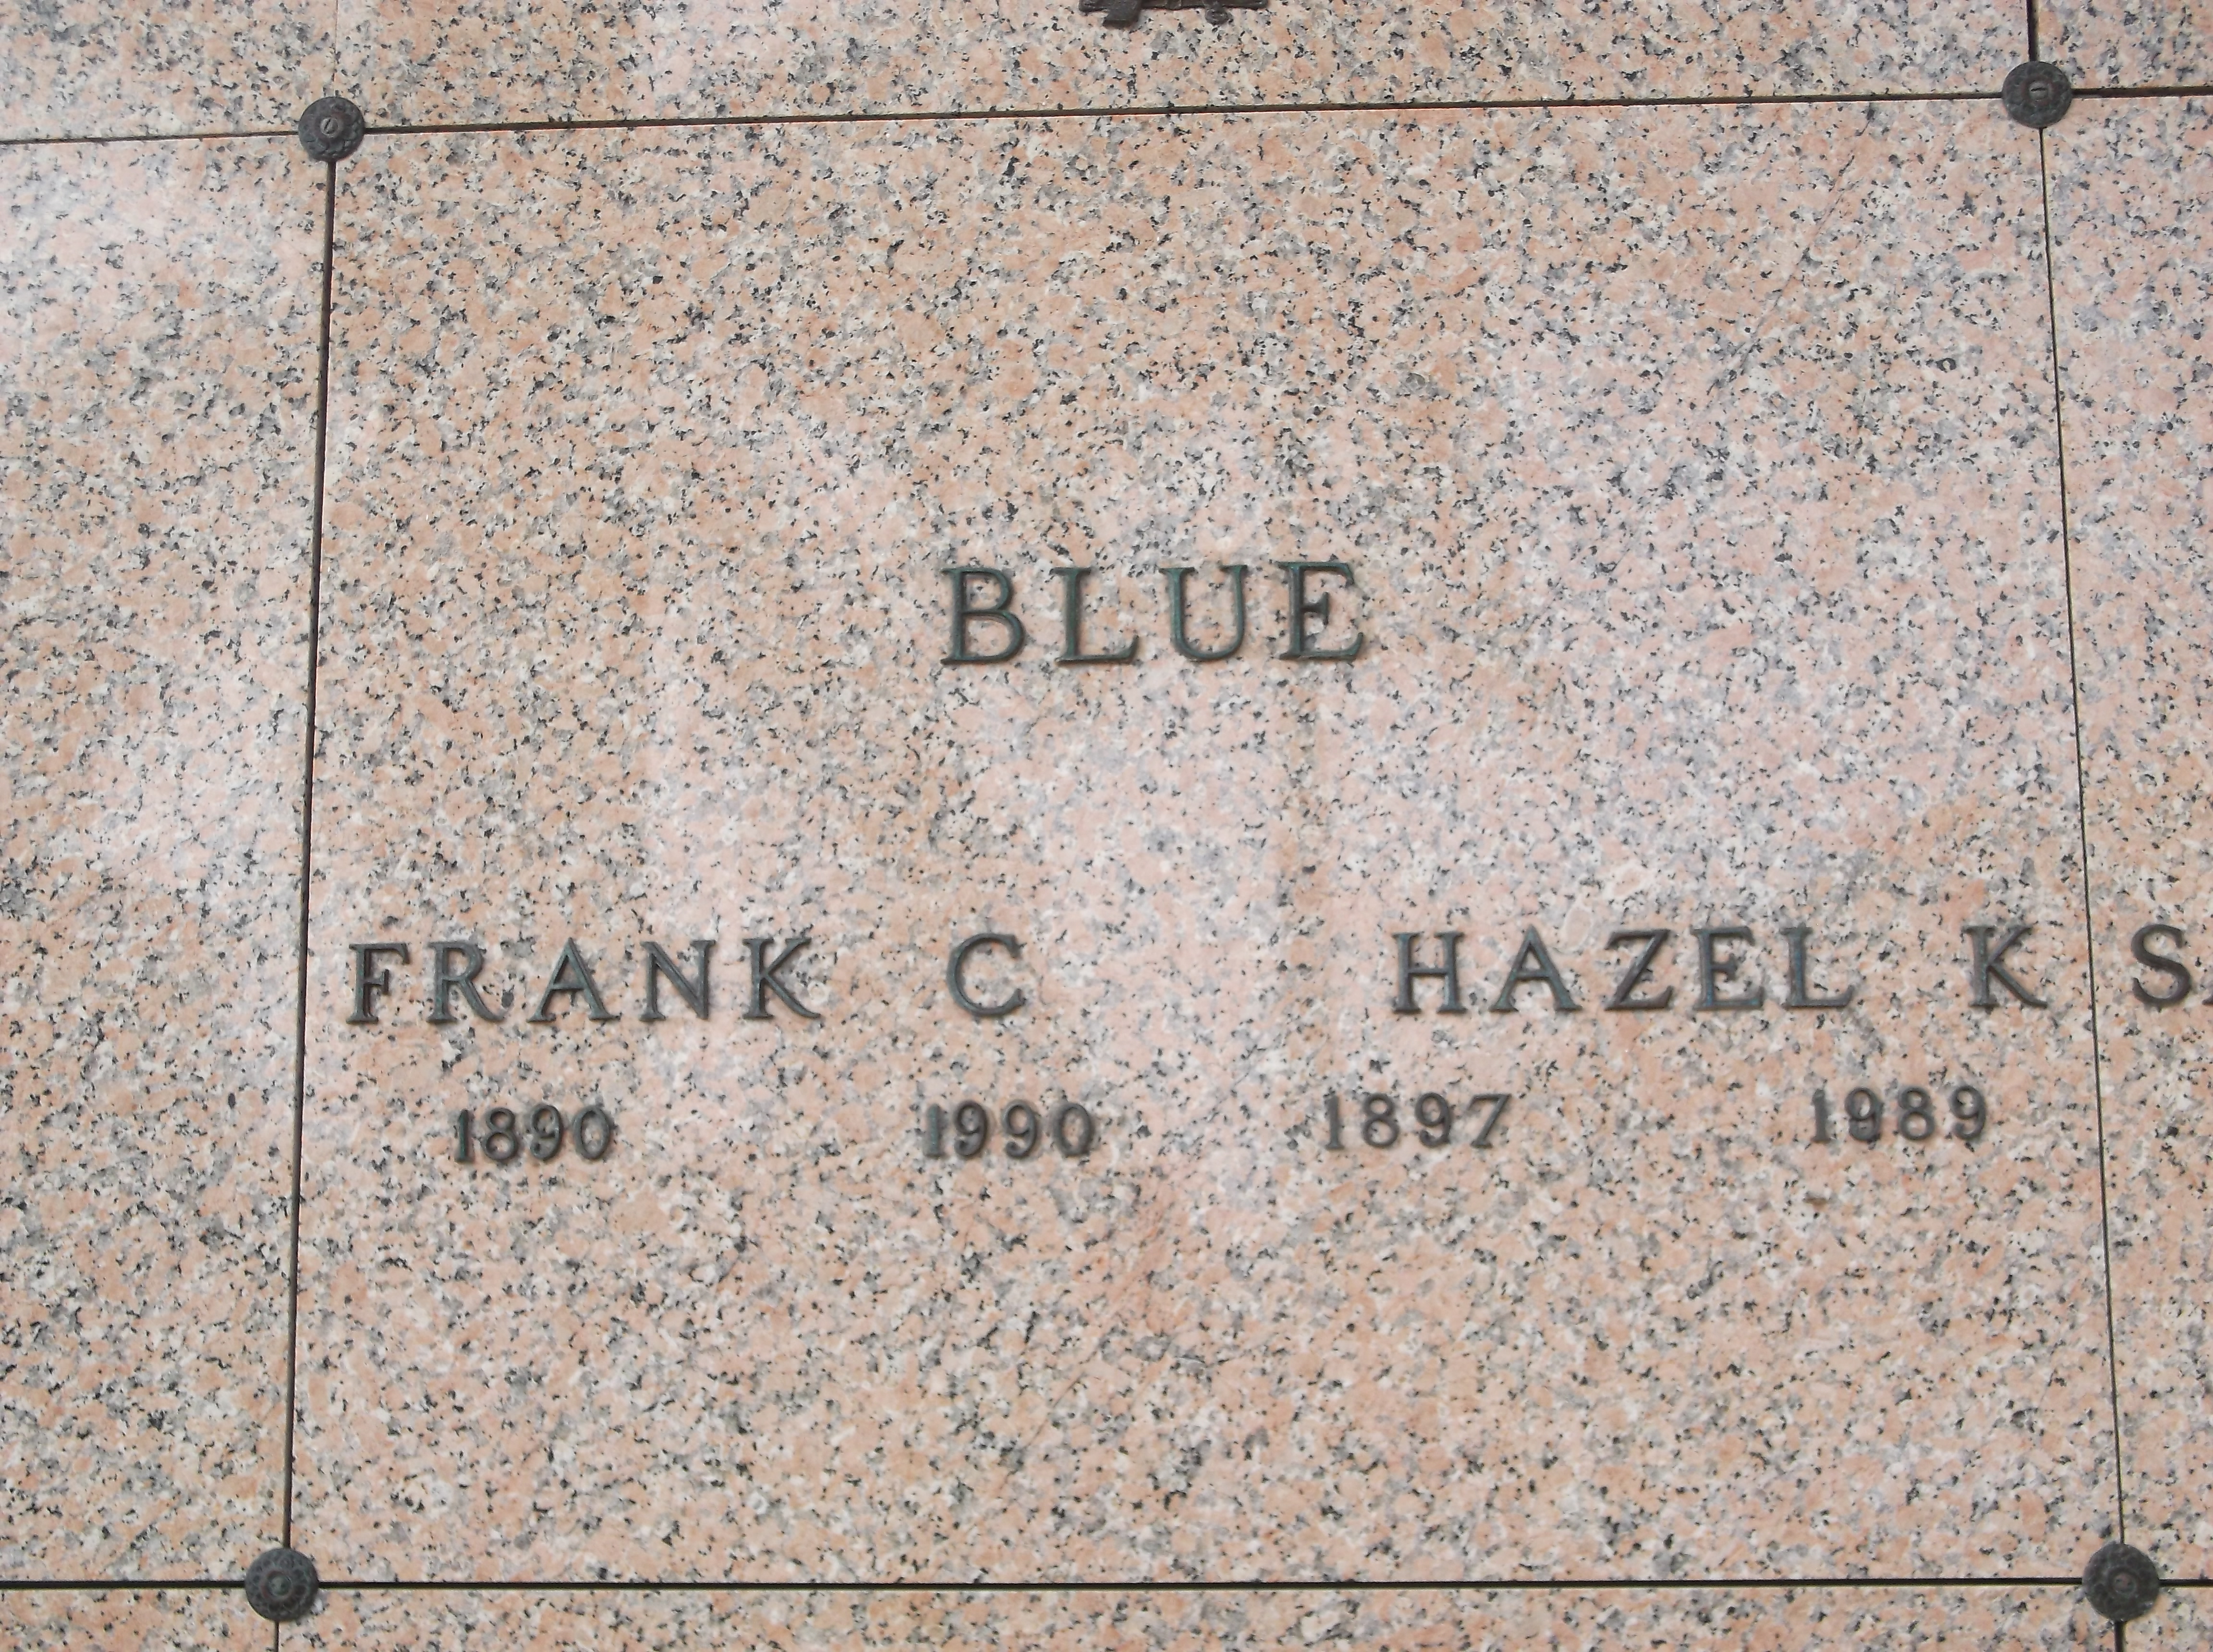 Hazel K Blue